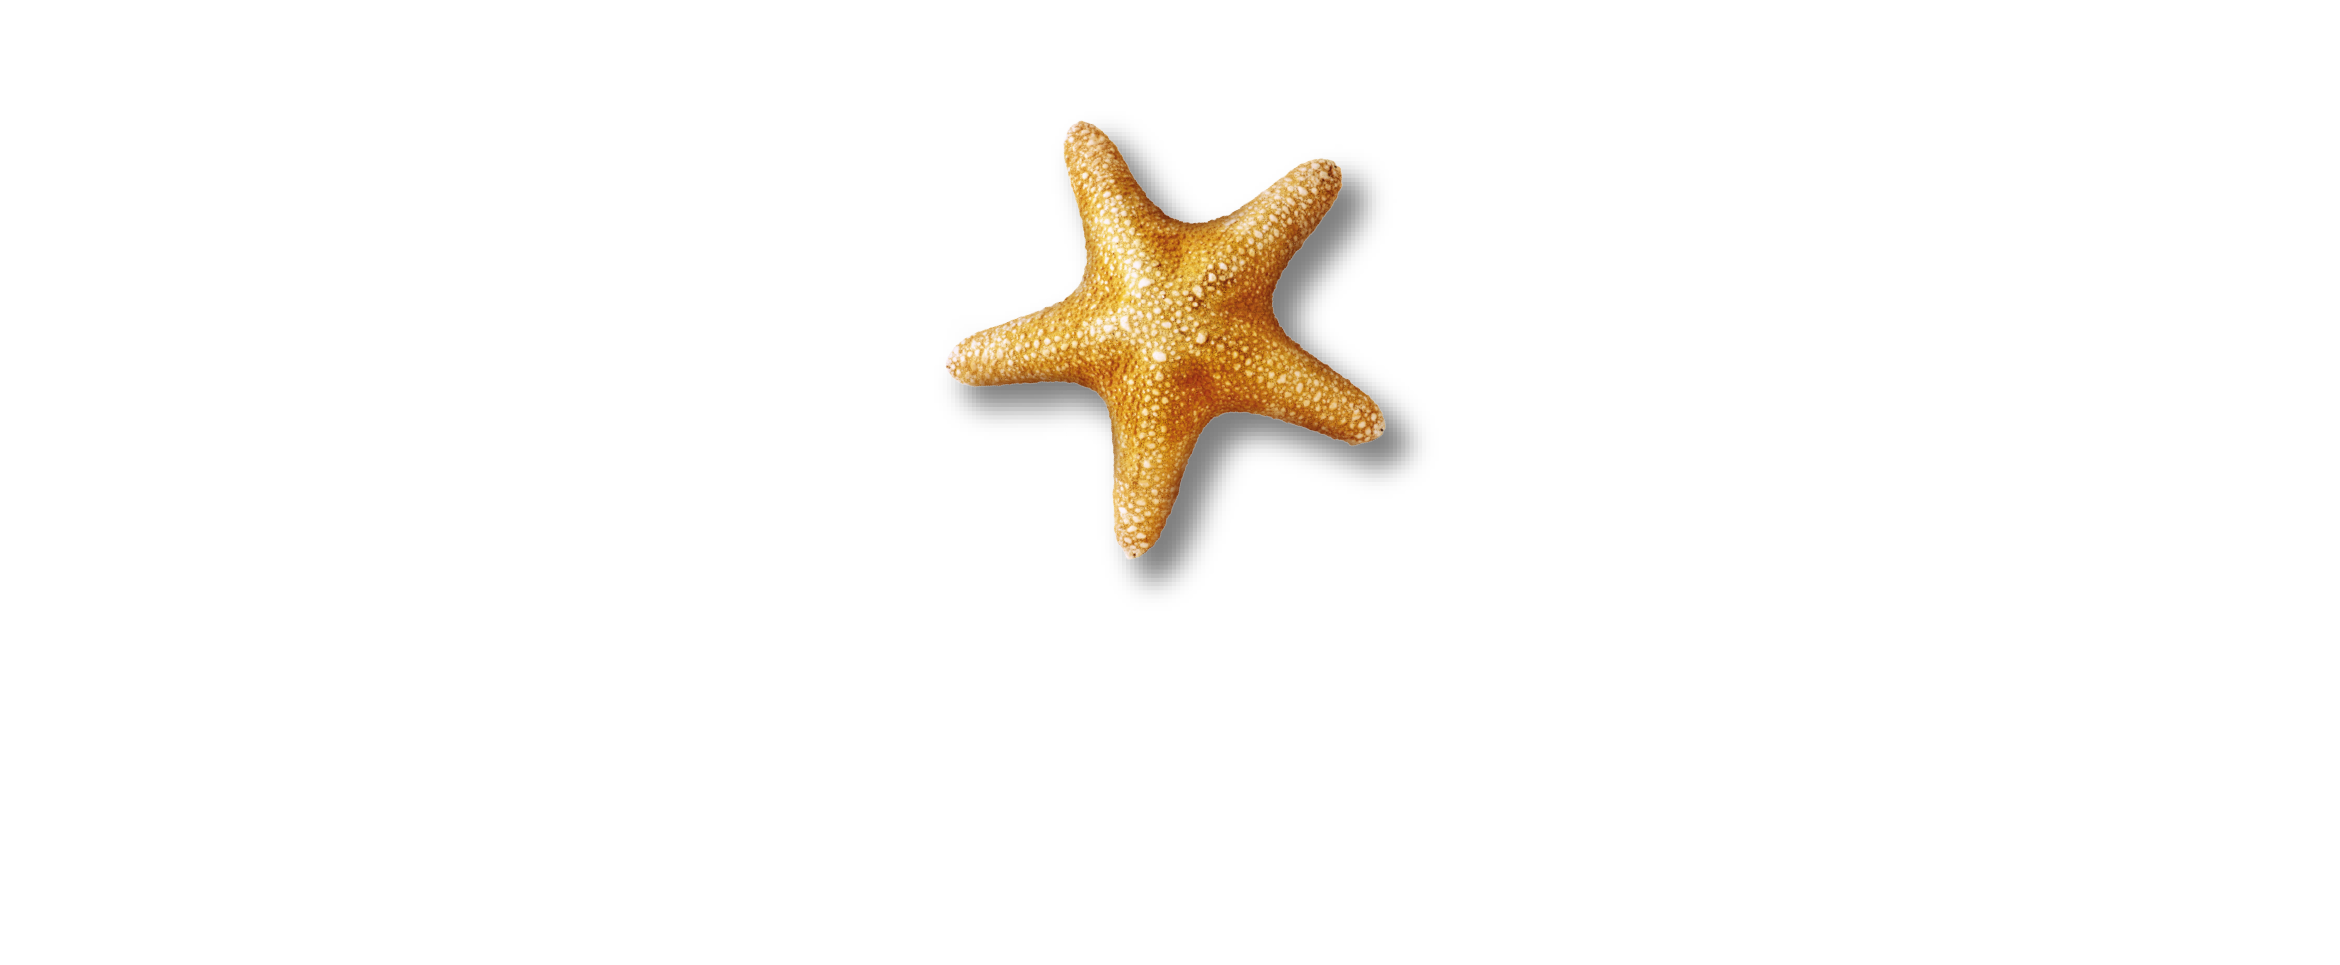 01 SEA LIFE + Malaysia (White Text) RGB